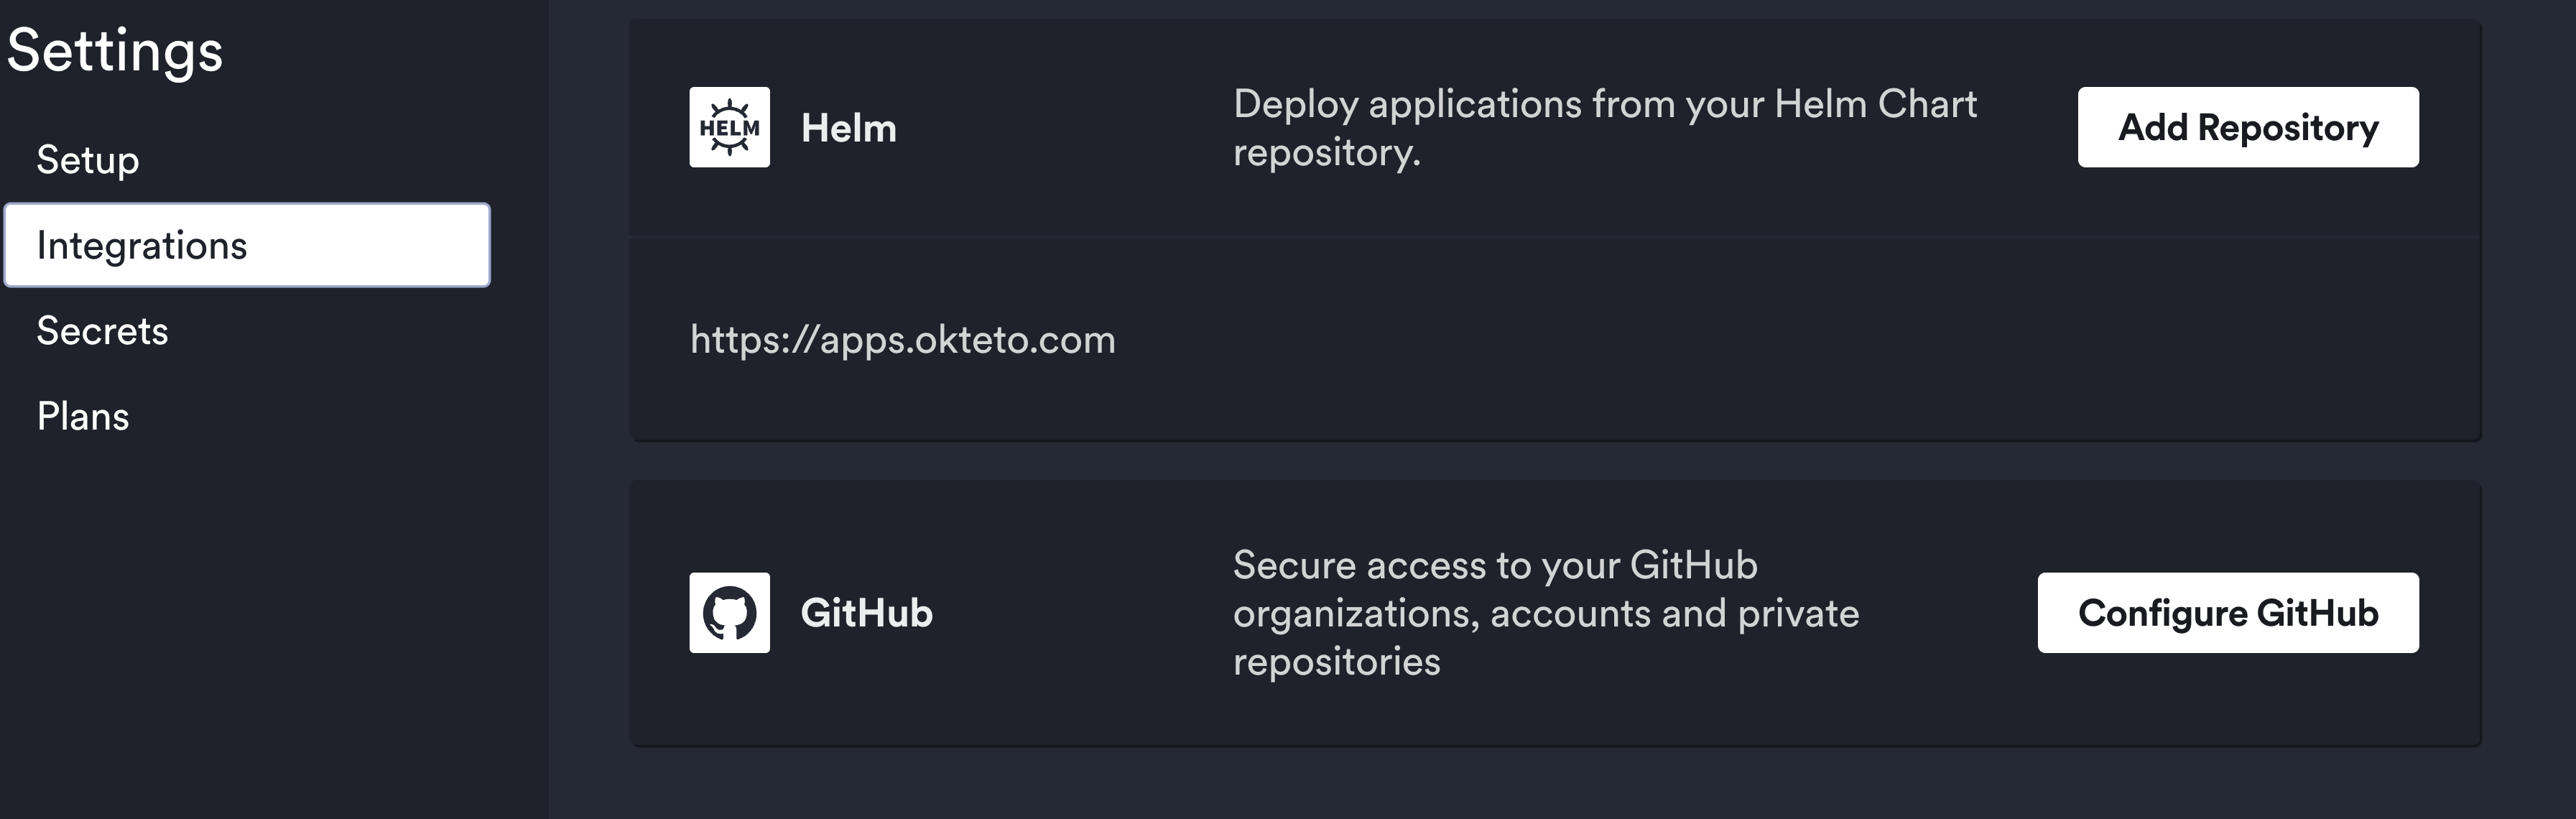 update private repositories